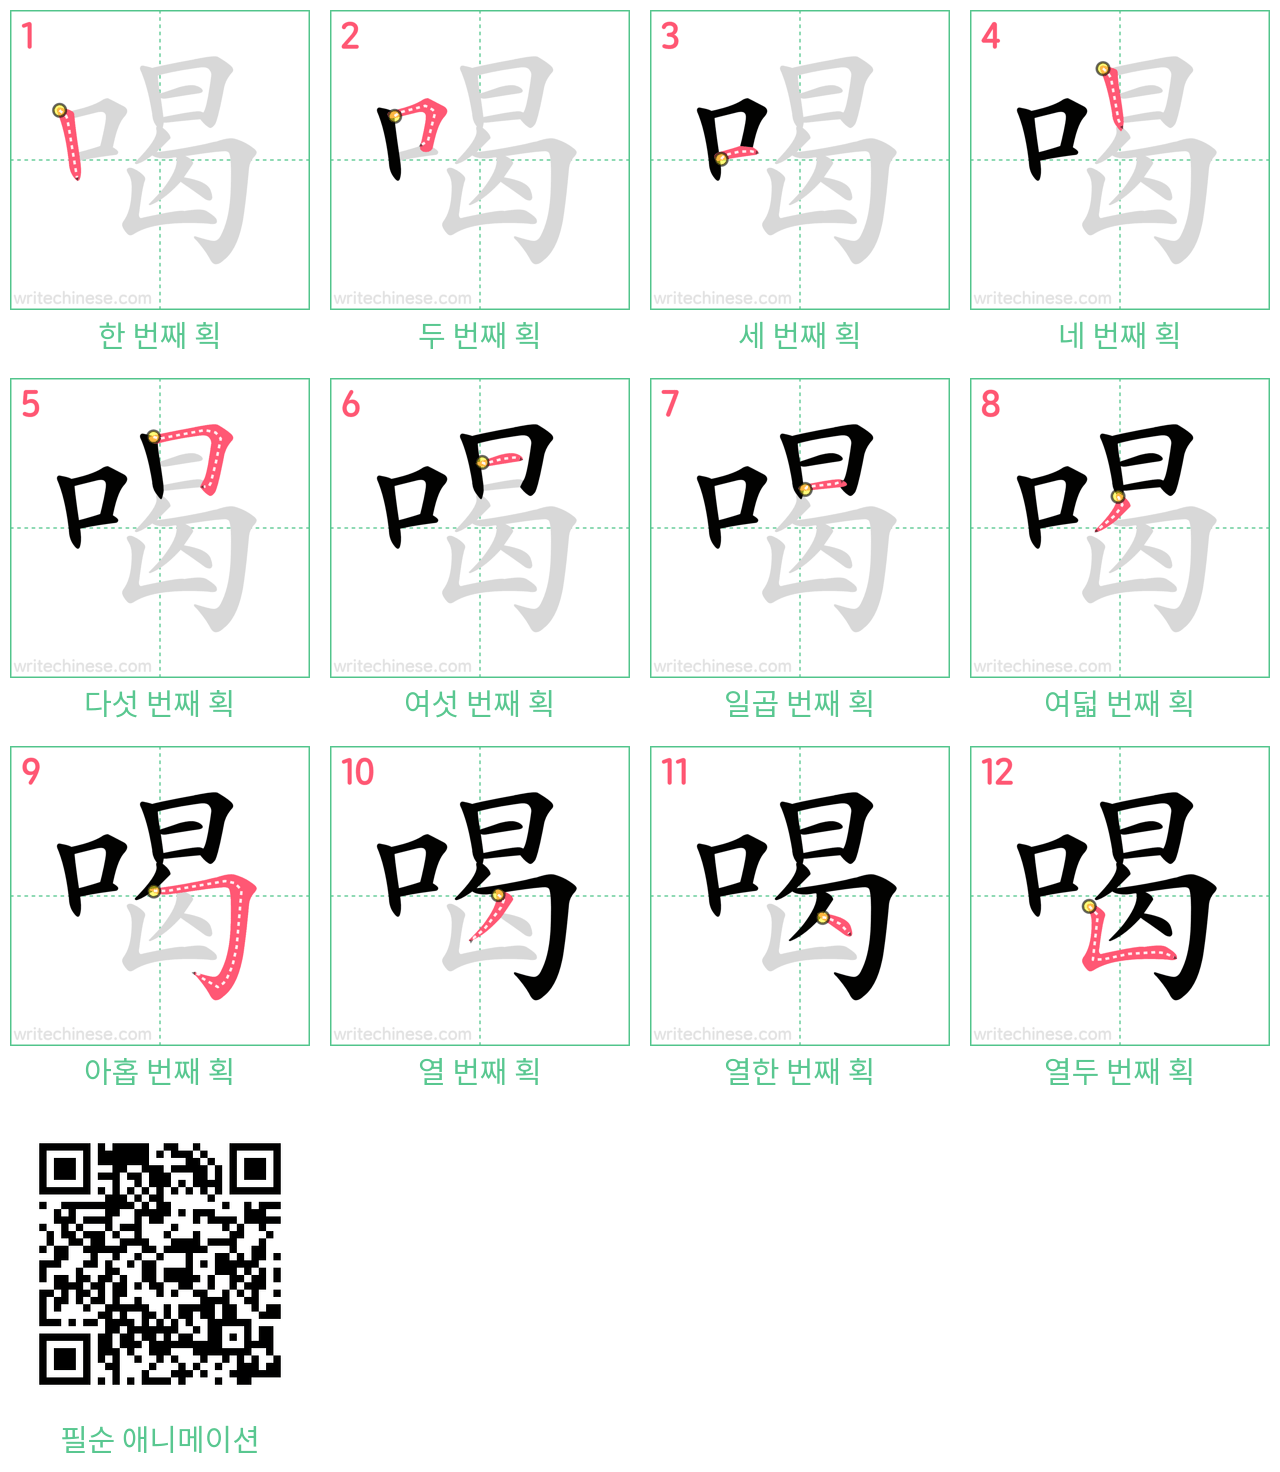 喝 step-by-step stroke order diagrams